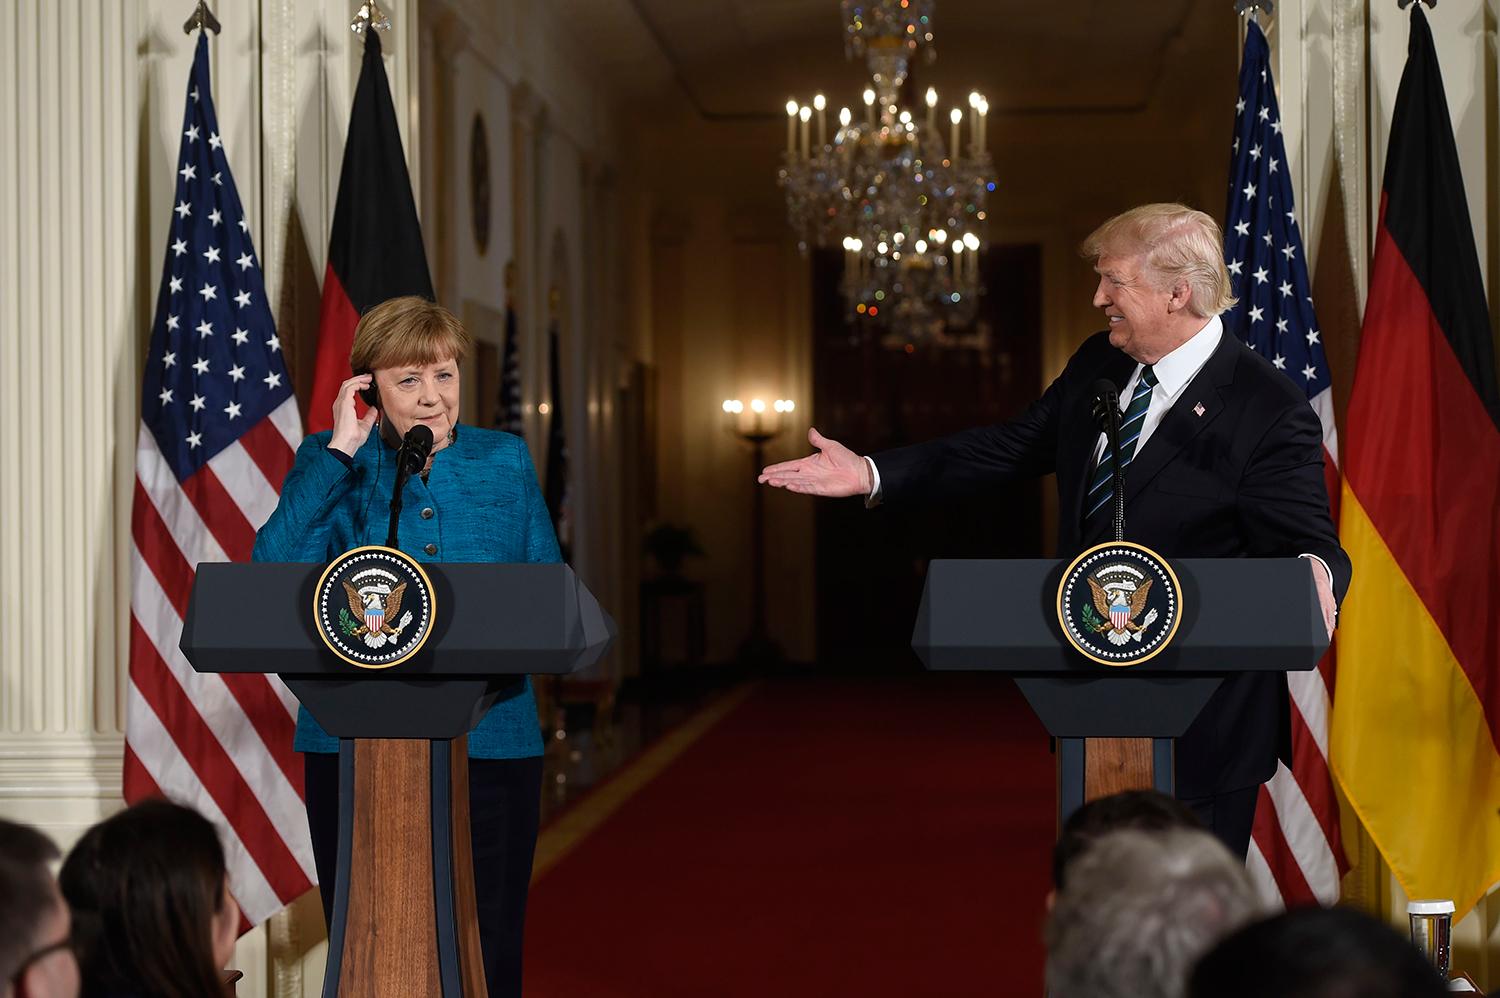 Tysklands förbundskansler Angela Merkel och USA:s president Donald Trump på presskonferensen.